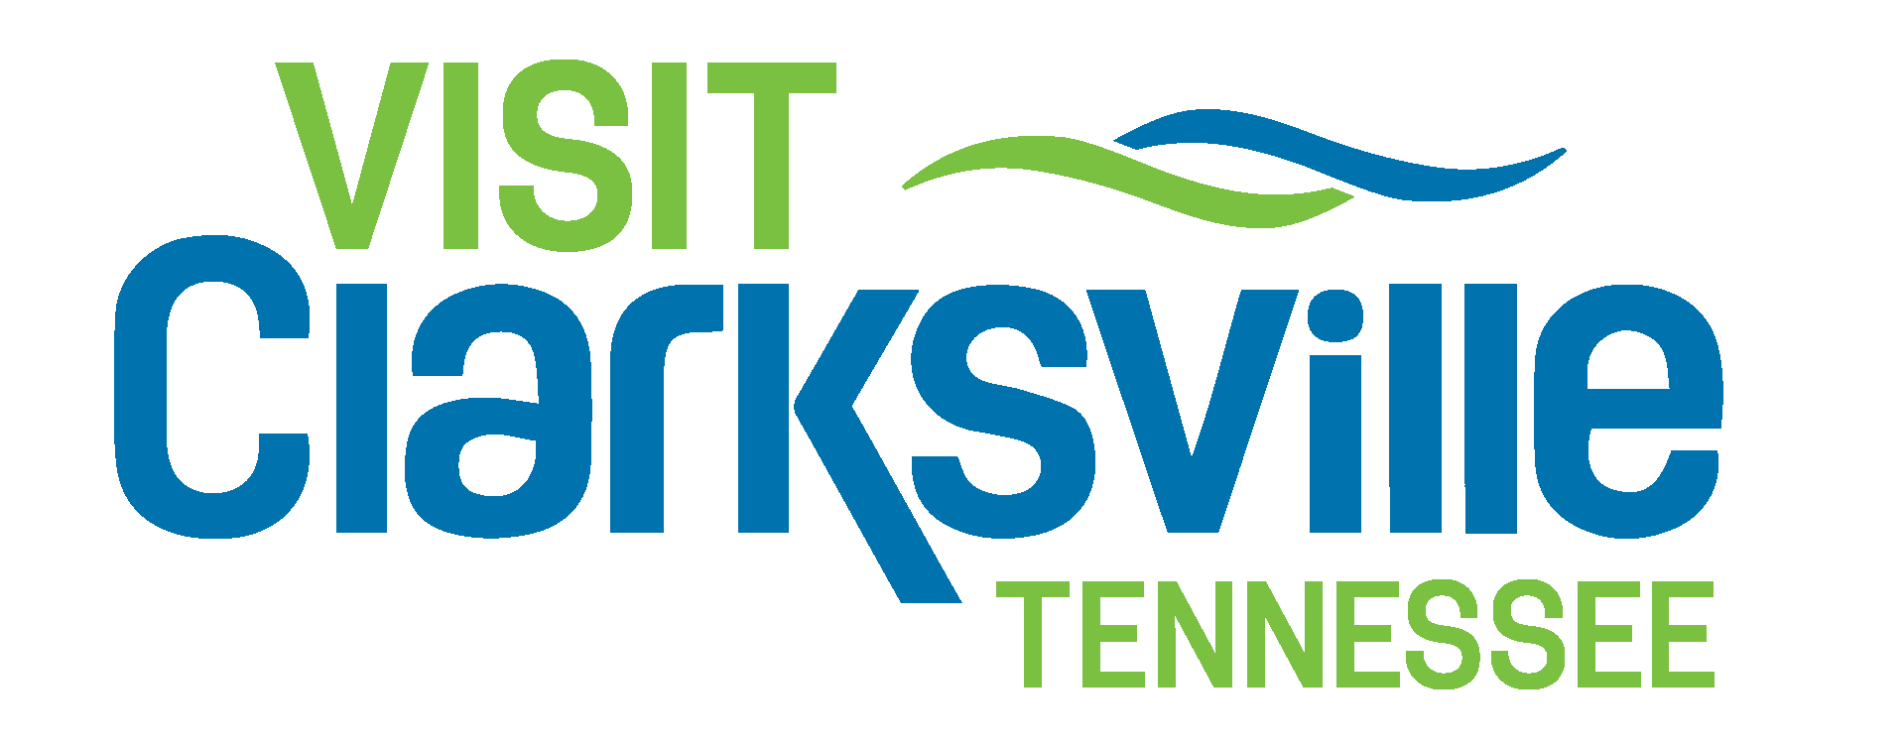 Visit Clarksville Tennessee Logo